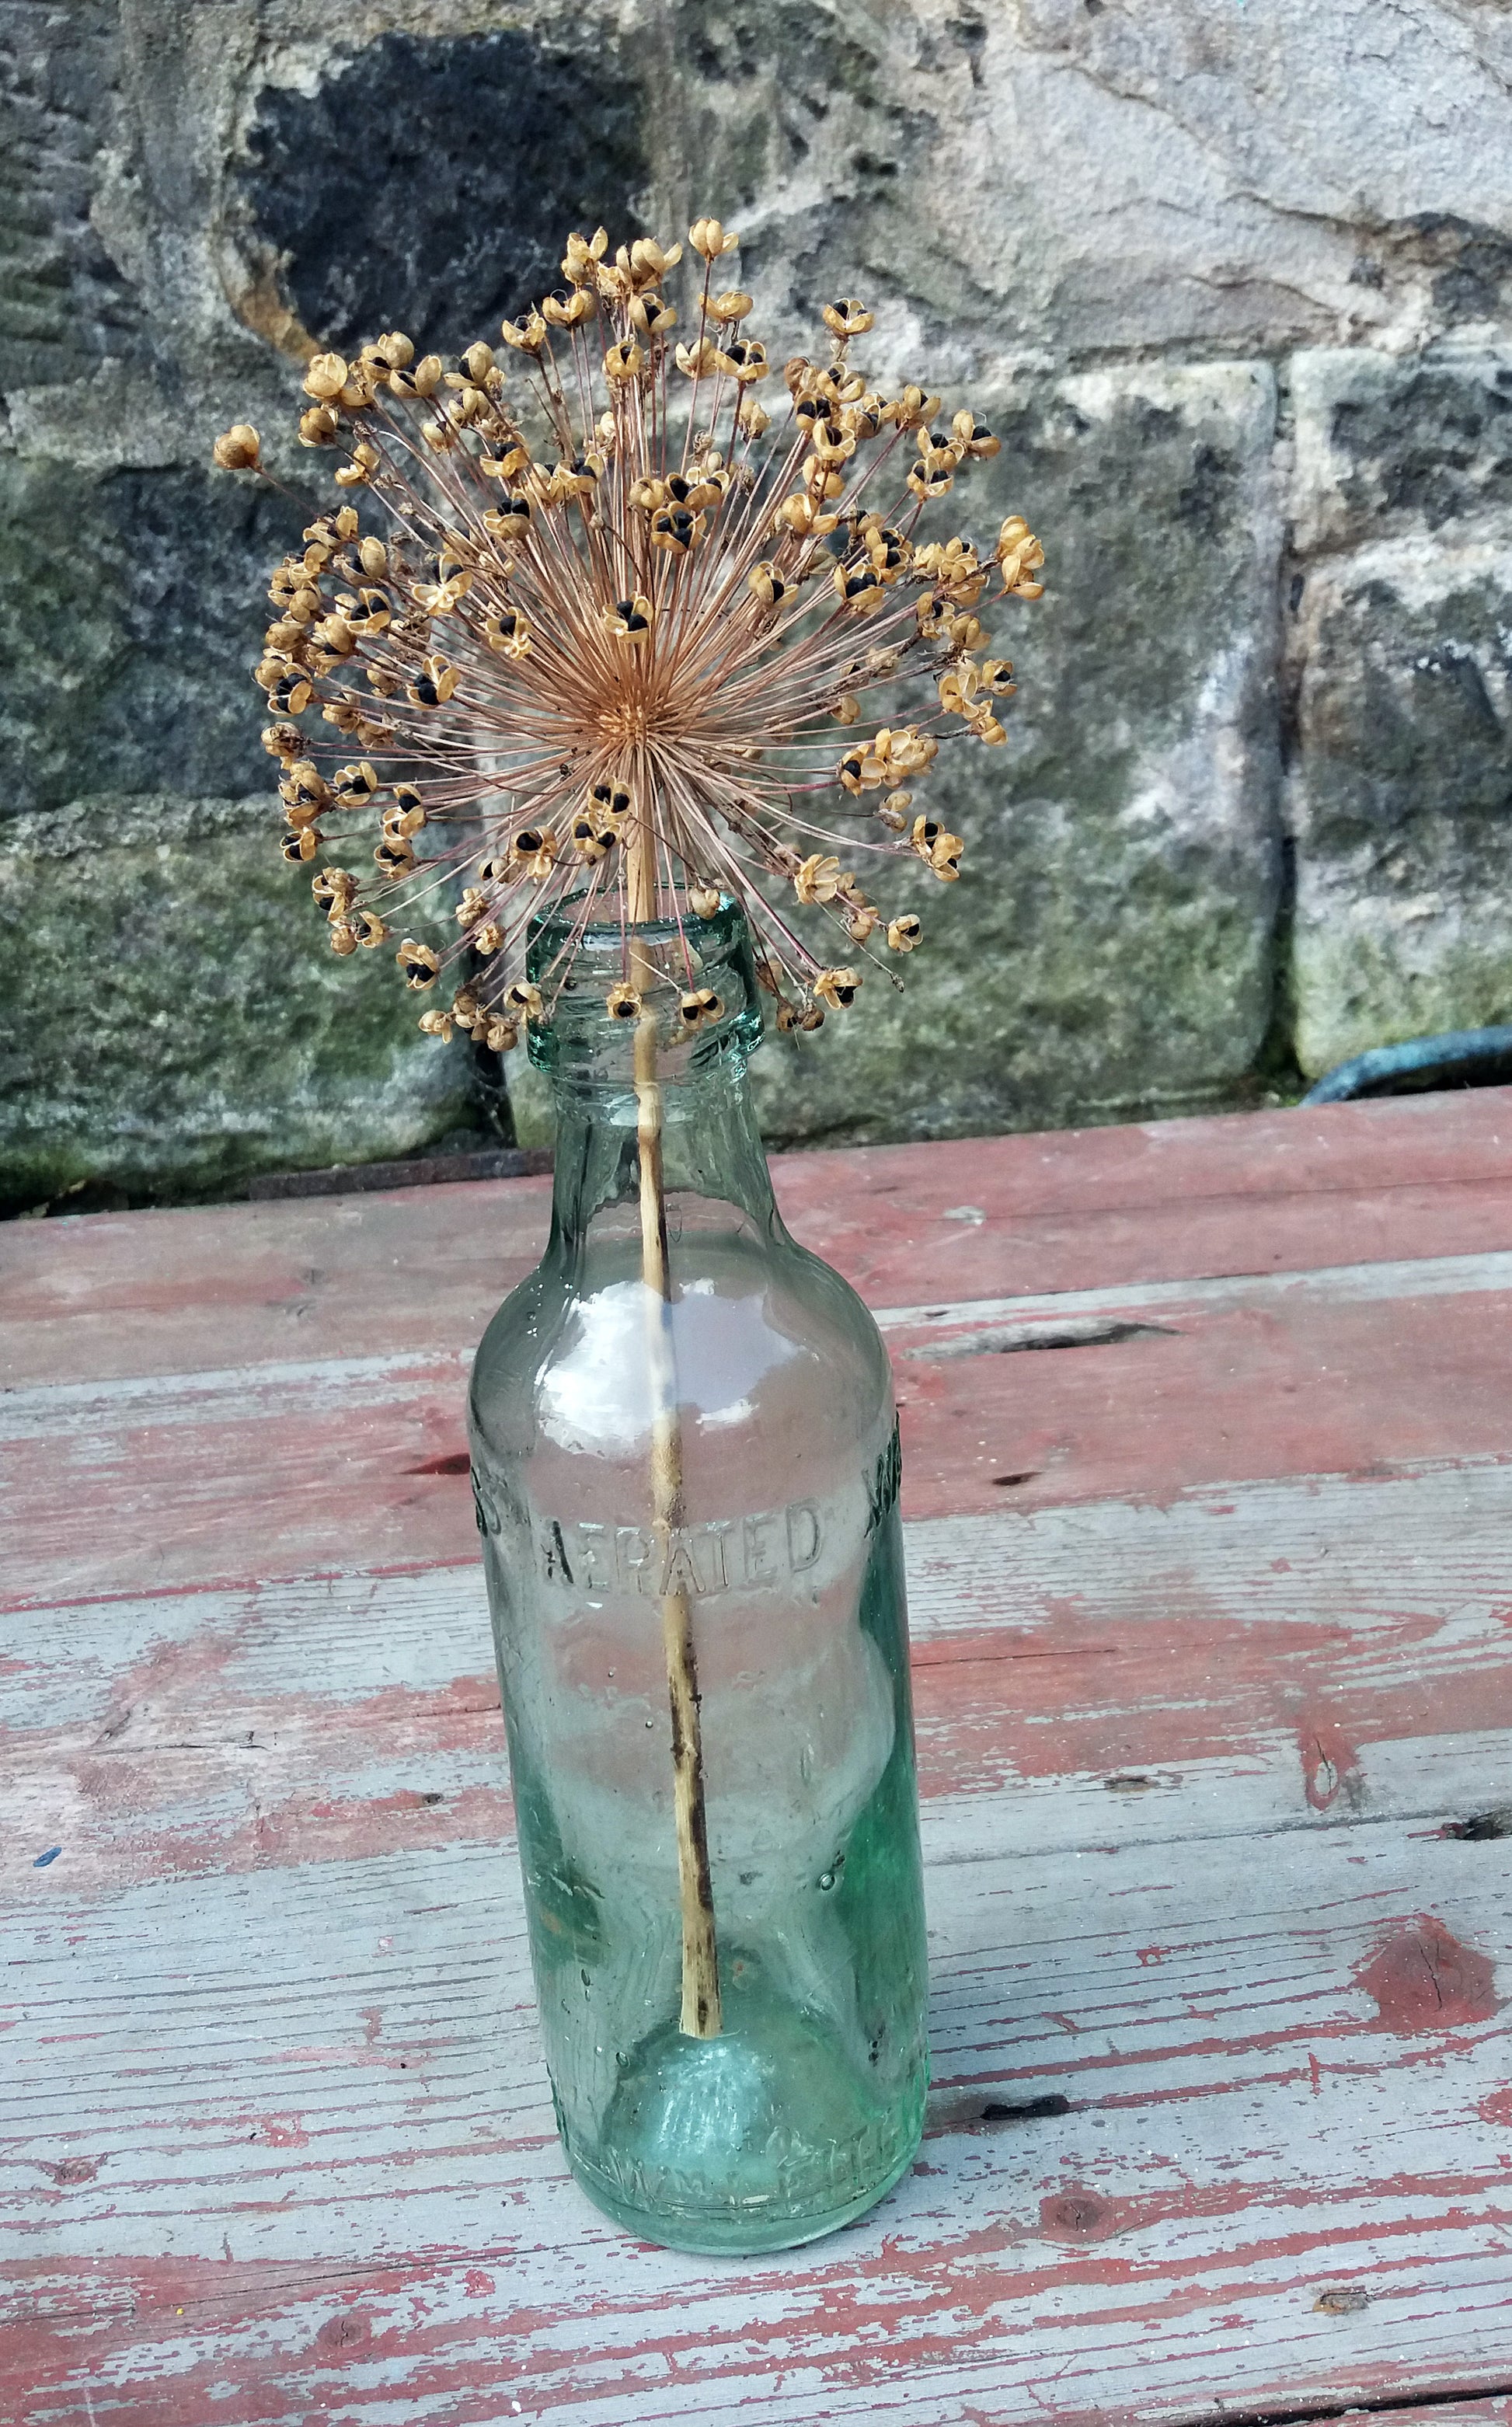 Large vintage glass bottle.